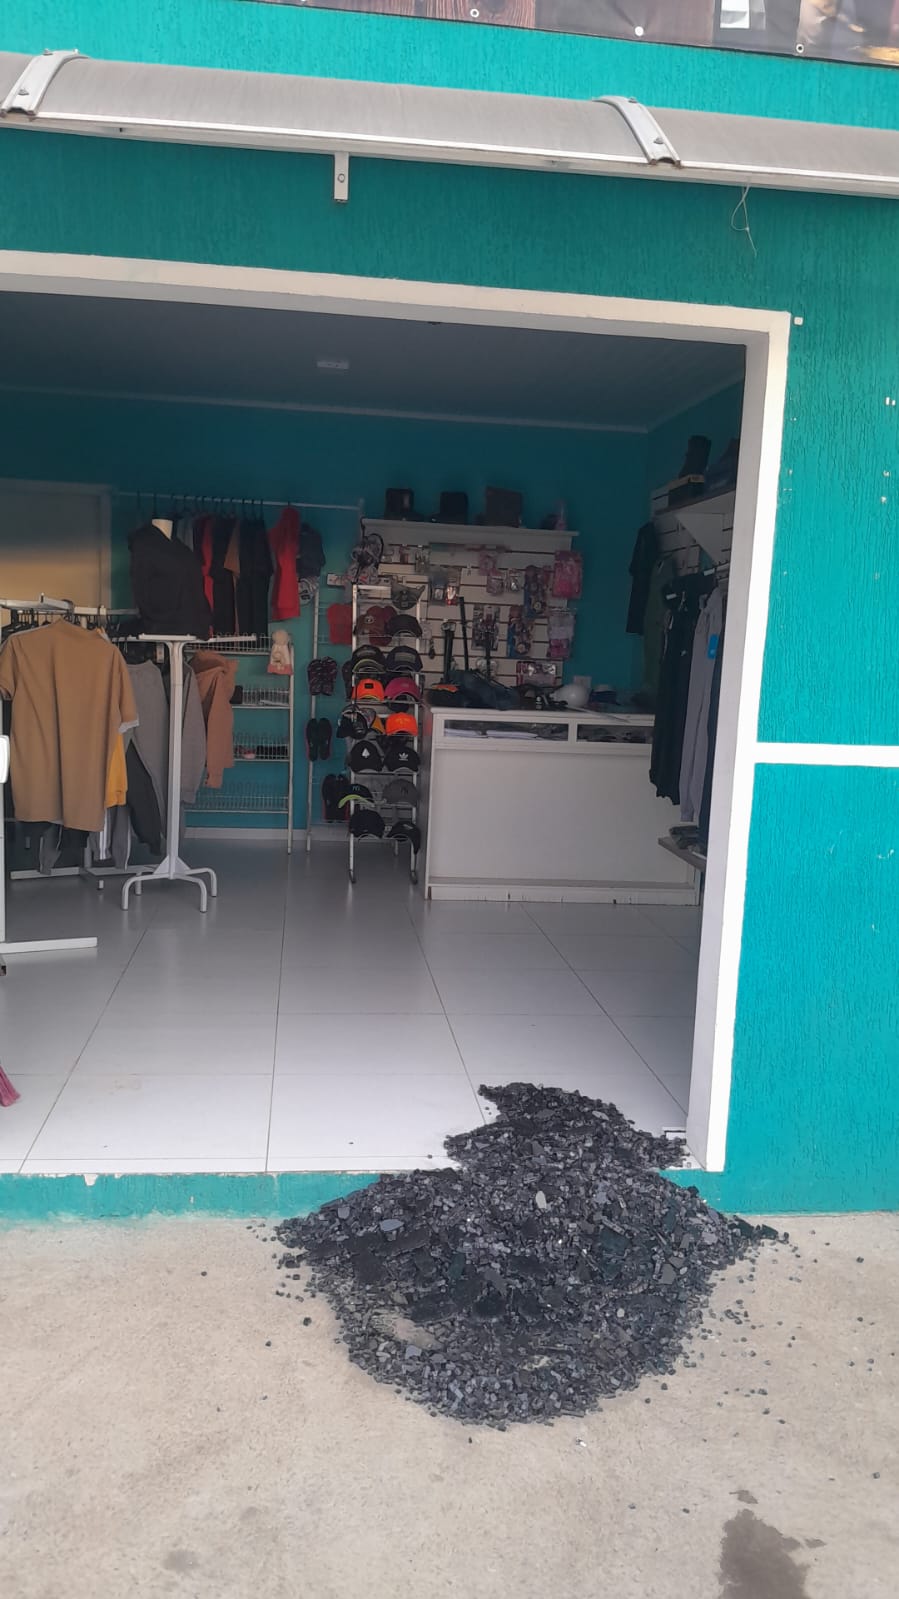 Criminoso quebra vidro e furta roupas de comércio, em Castro